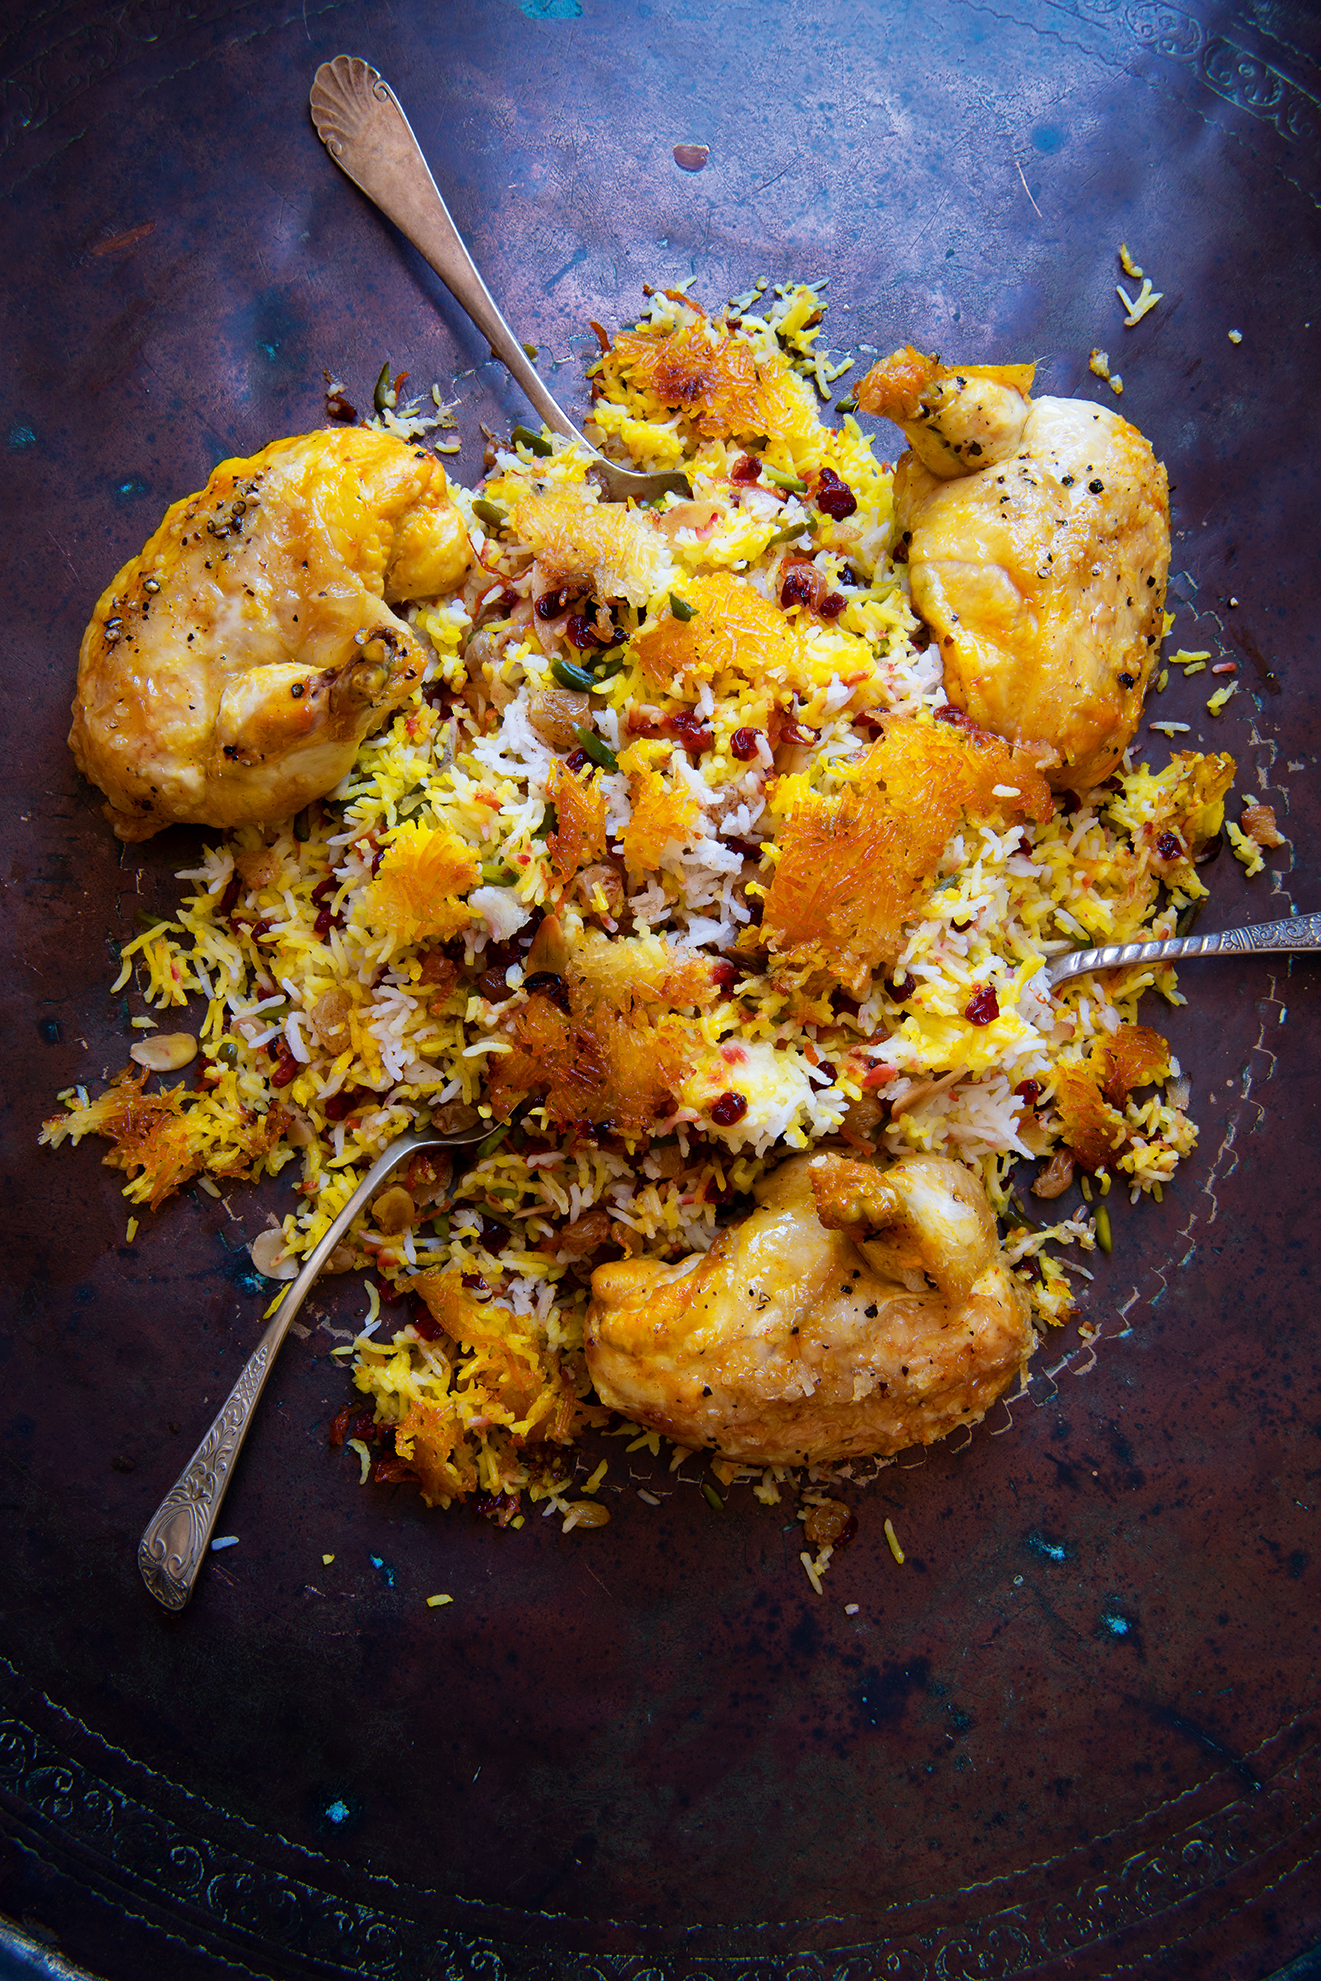 Saffron Persian rice 2147